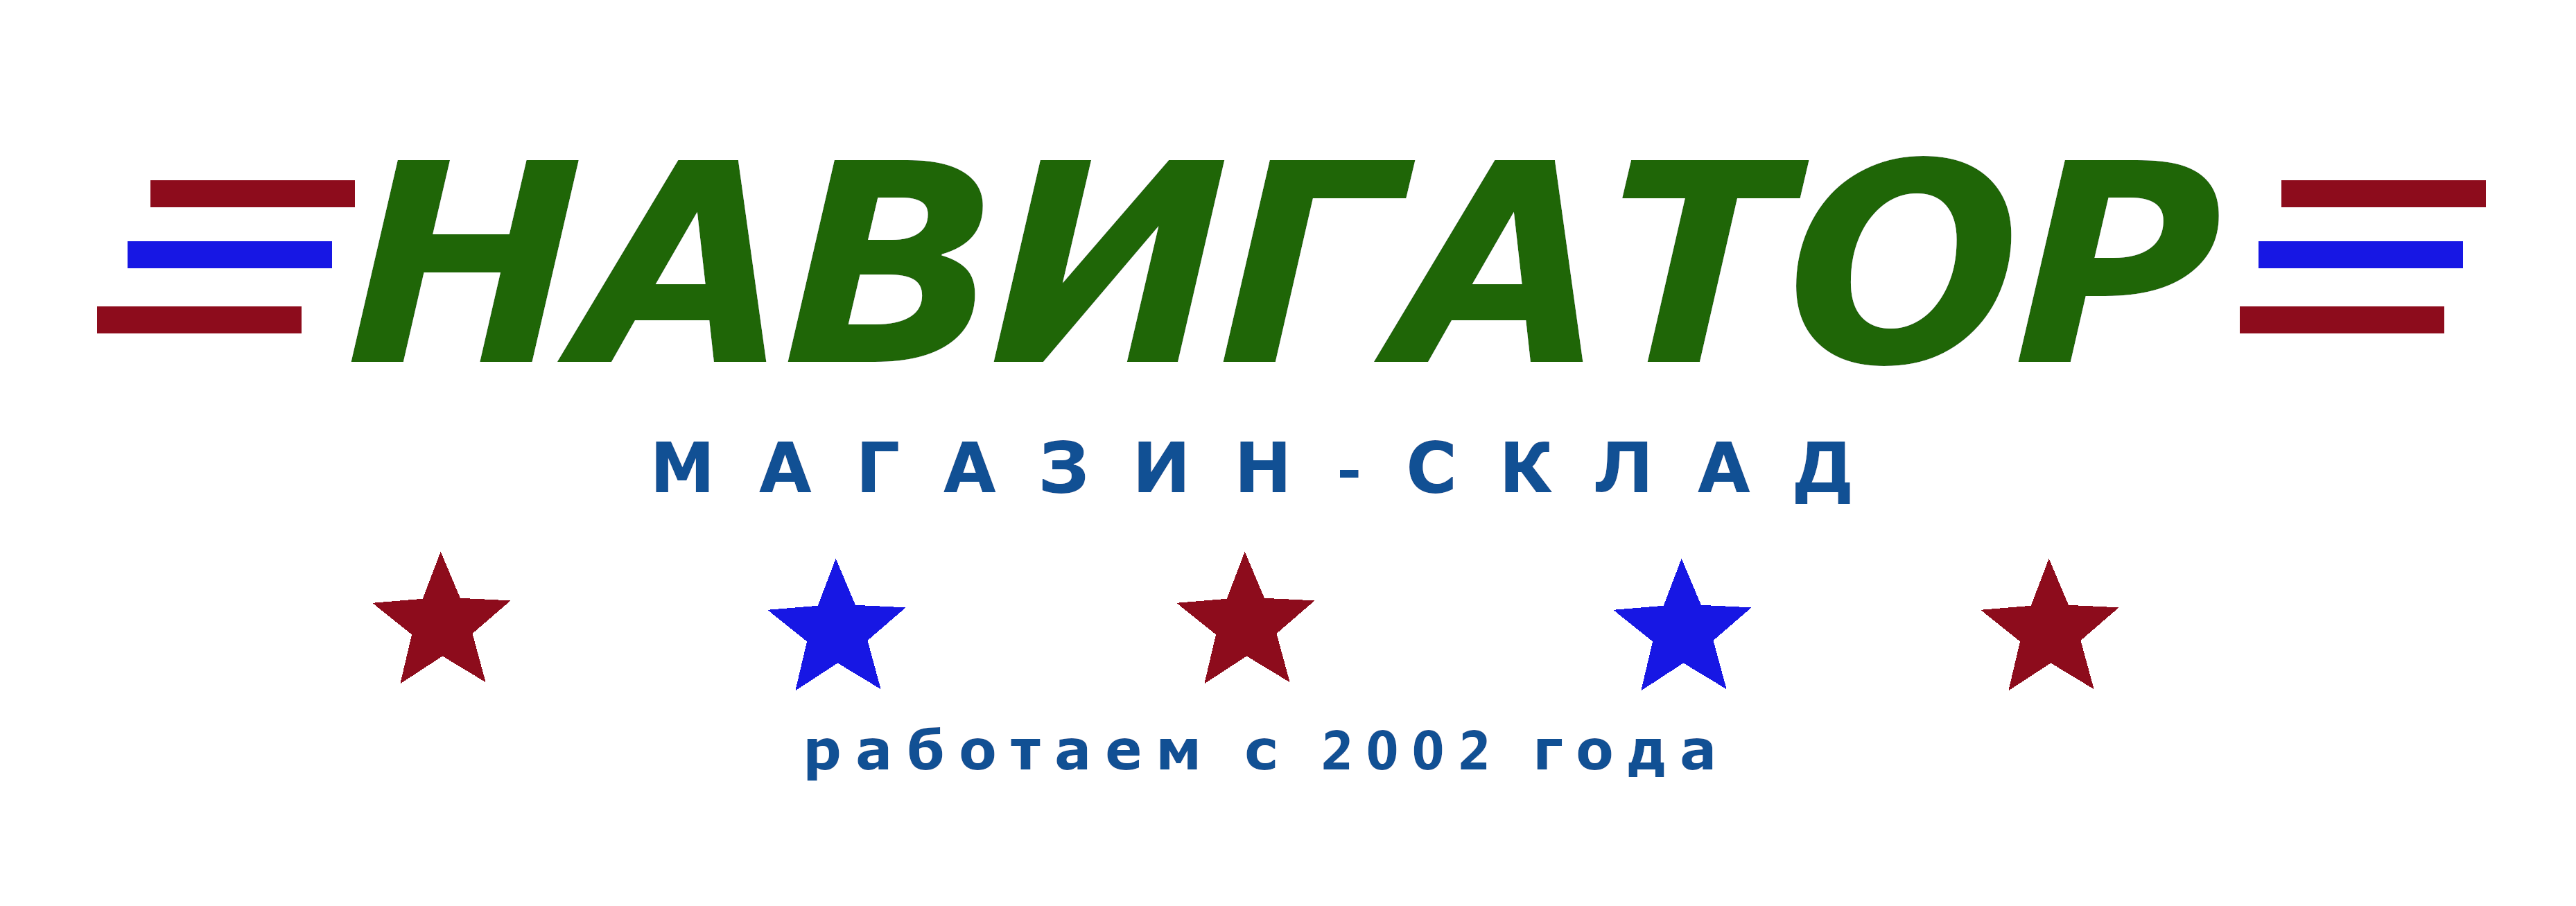 Лого (1)